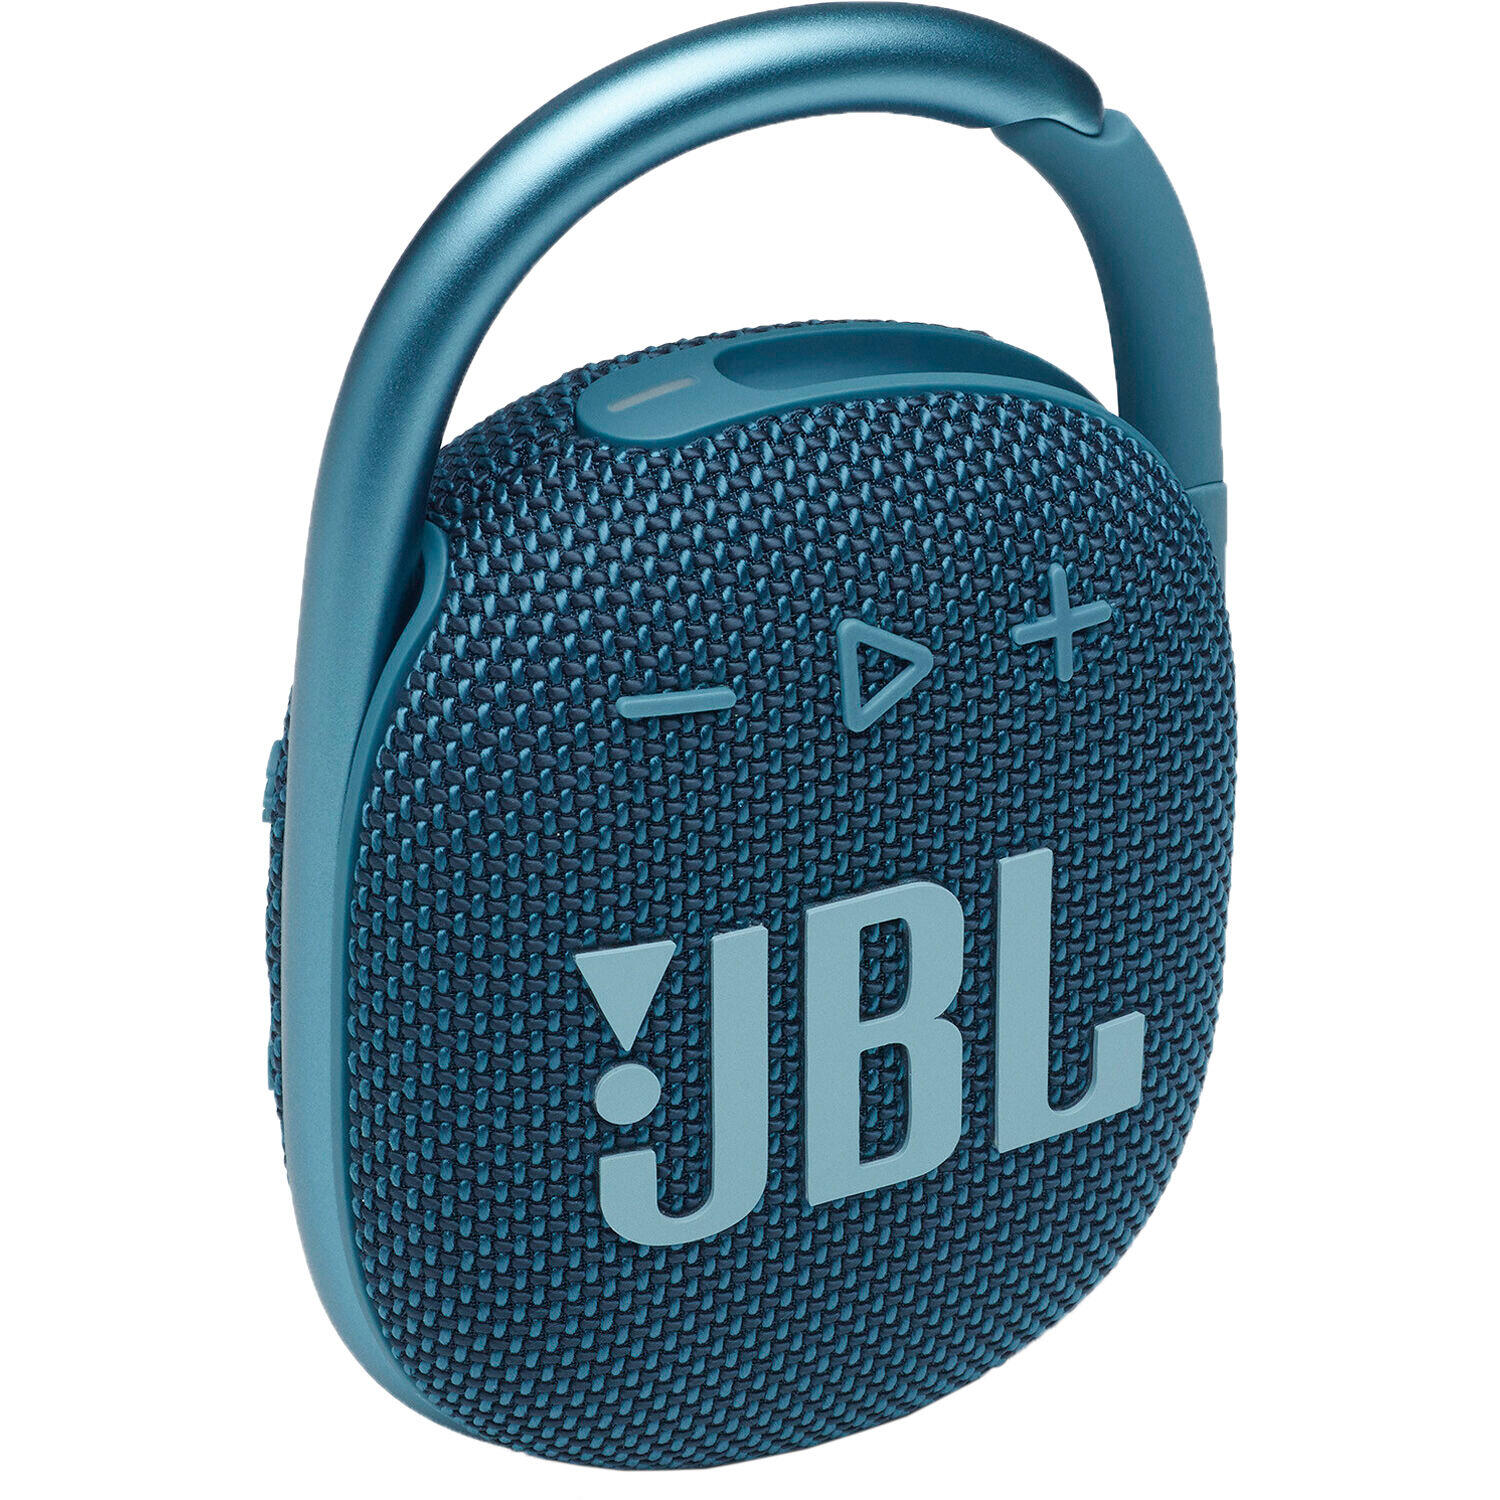 JBL Clip 4 Ultra-portable IPX7 Waterproof Speaker 1/3